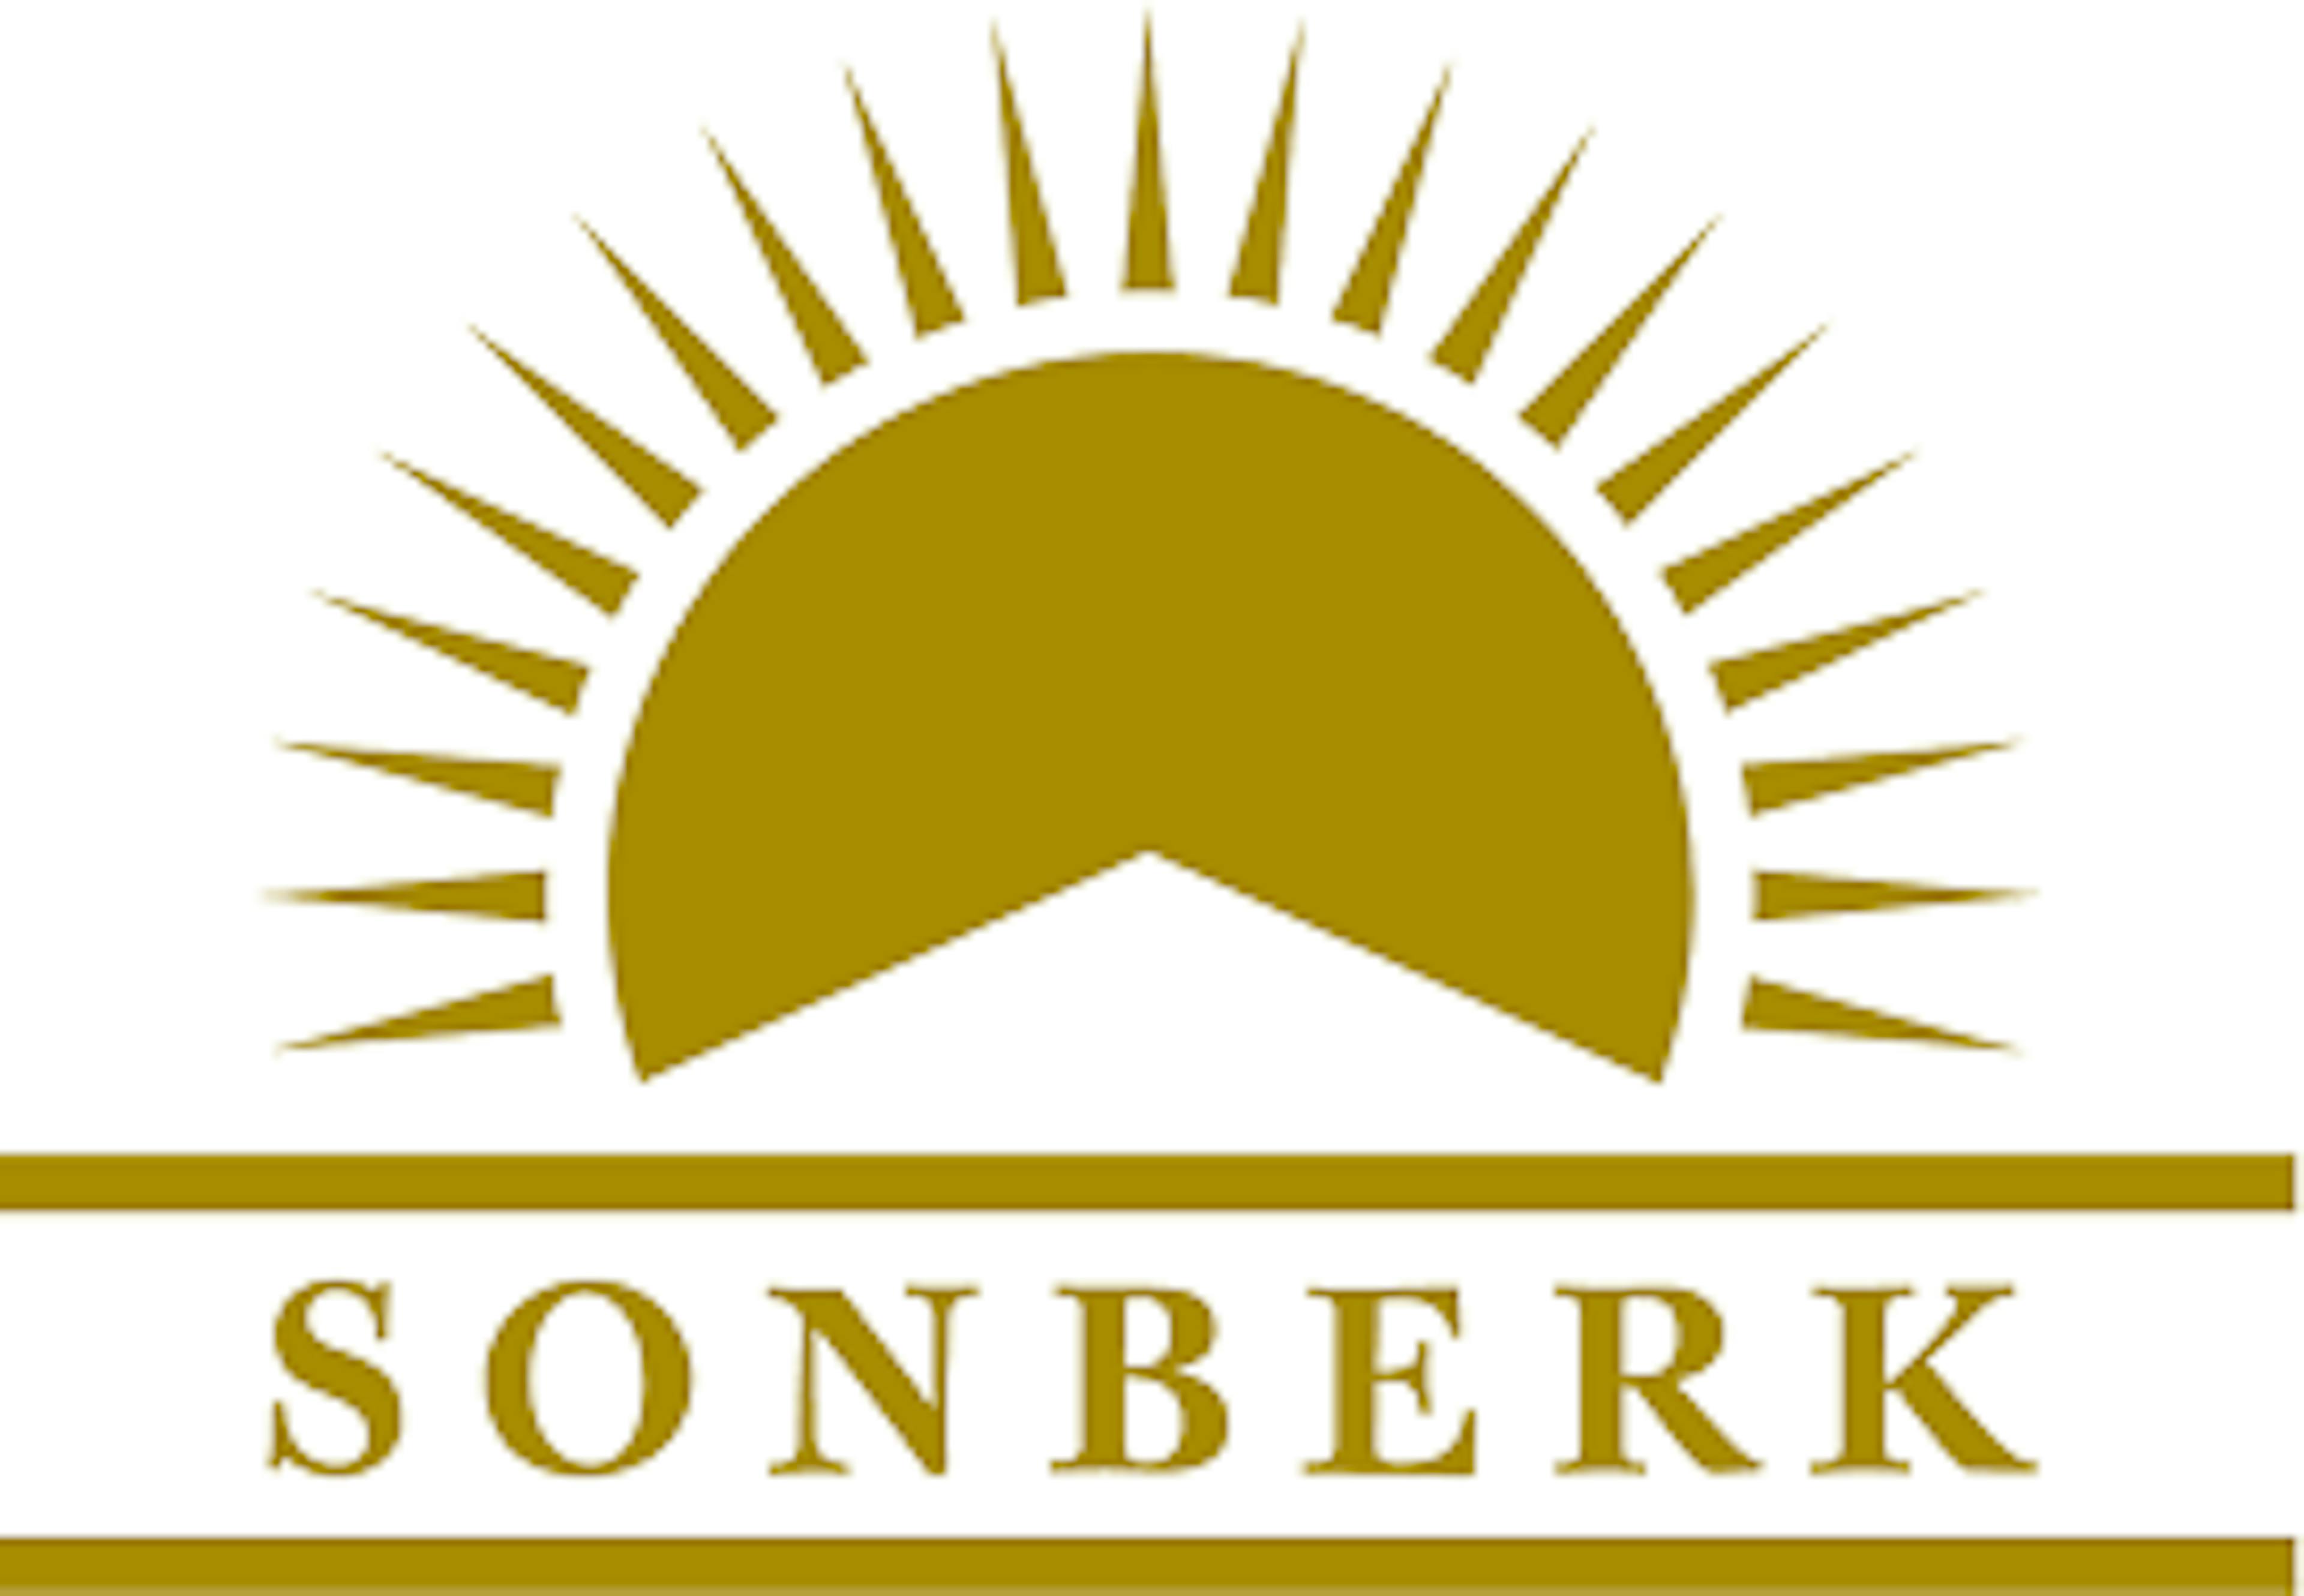 Sonberk logo